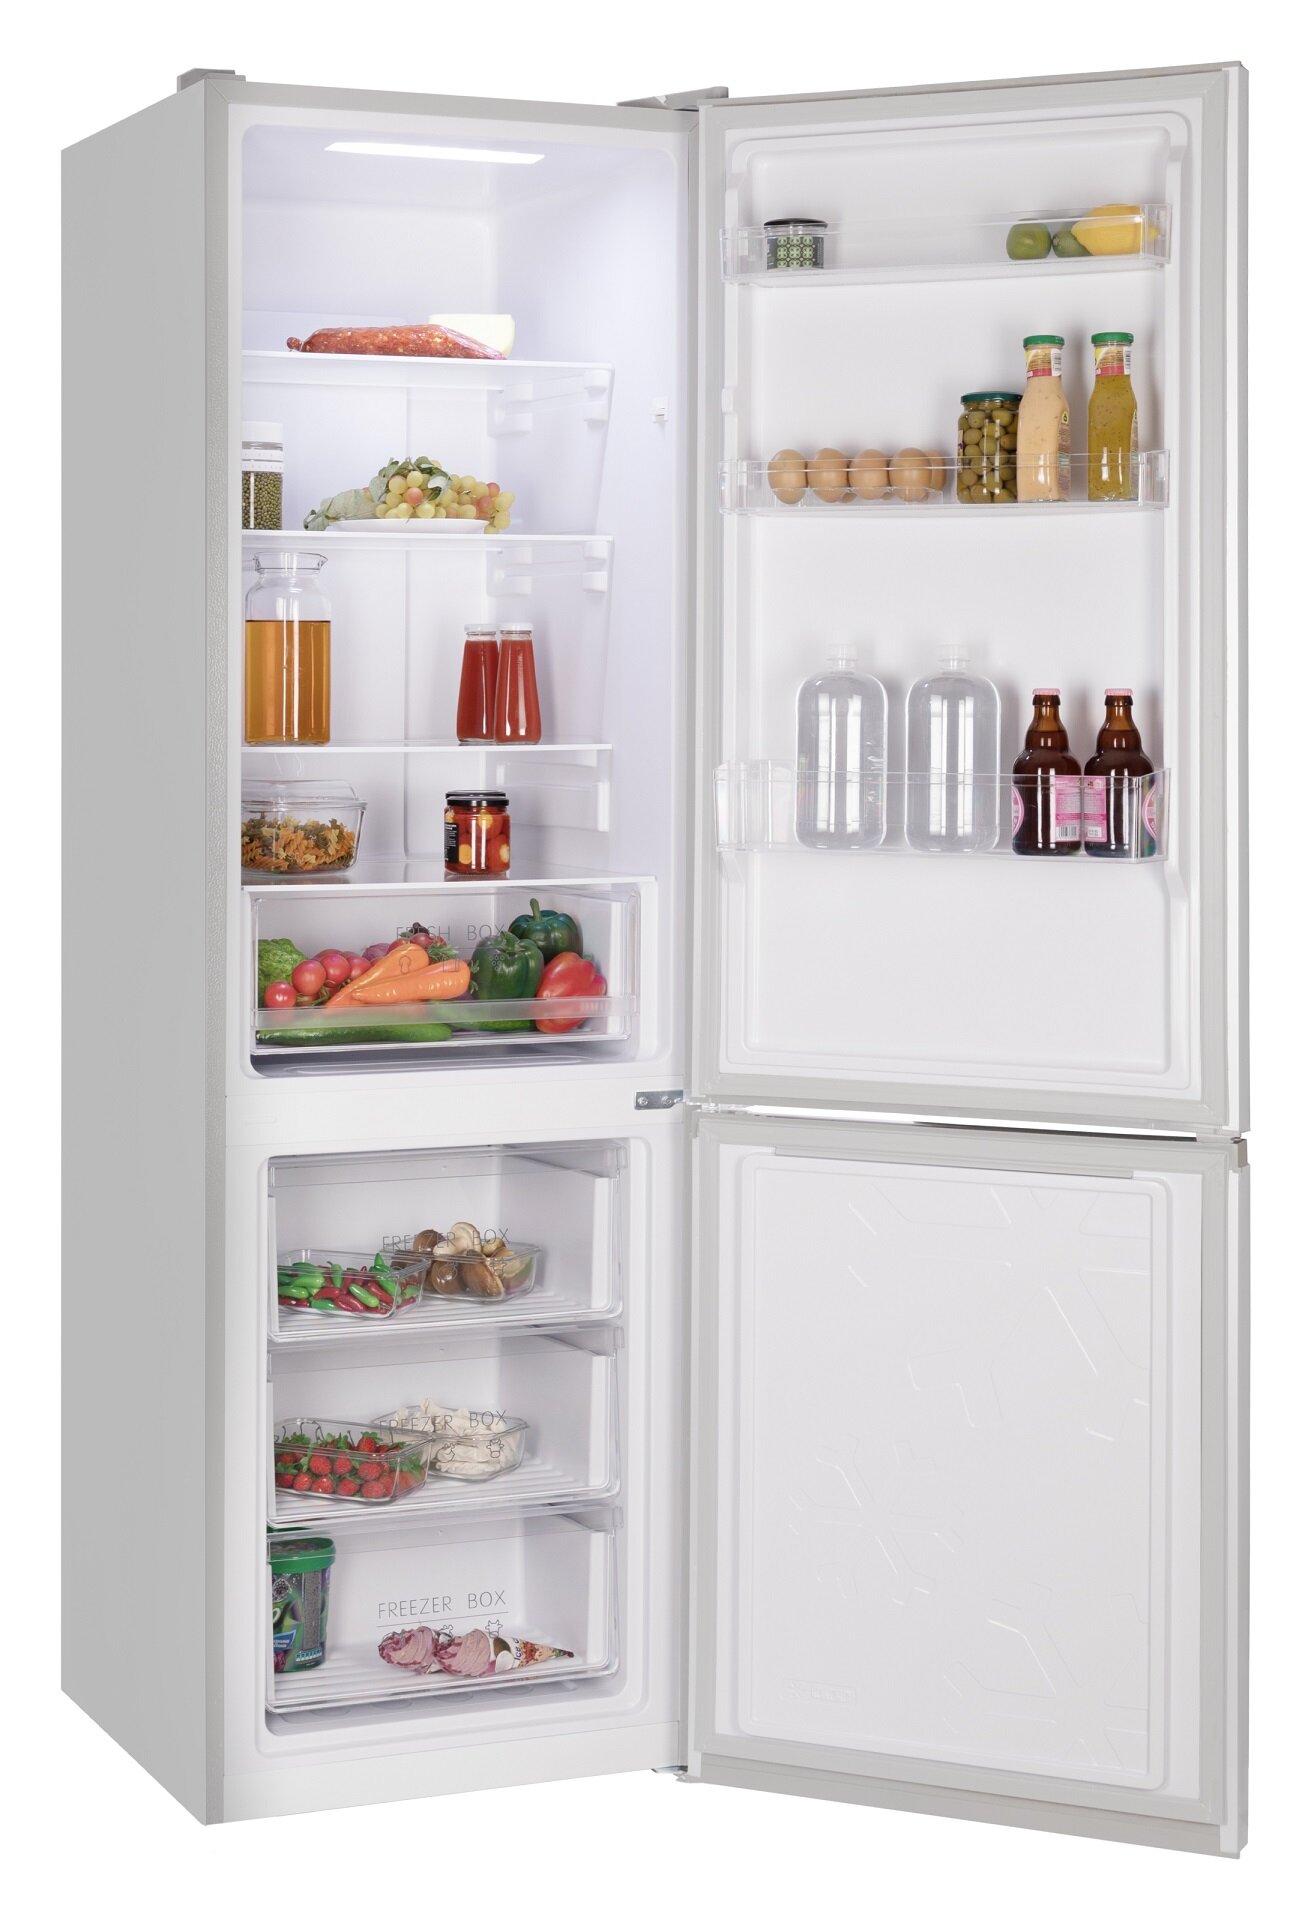 Холодильник NORDFROST RFC 350D NF двухкамерный 348 л объем Total No Frost дисплей